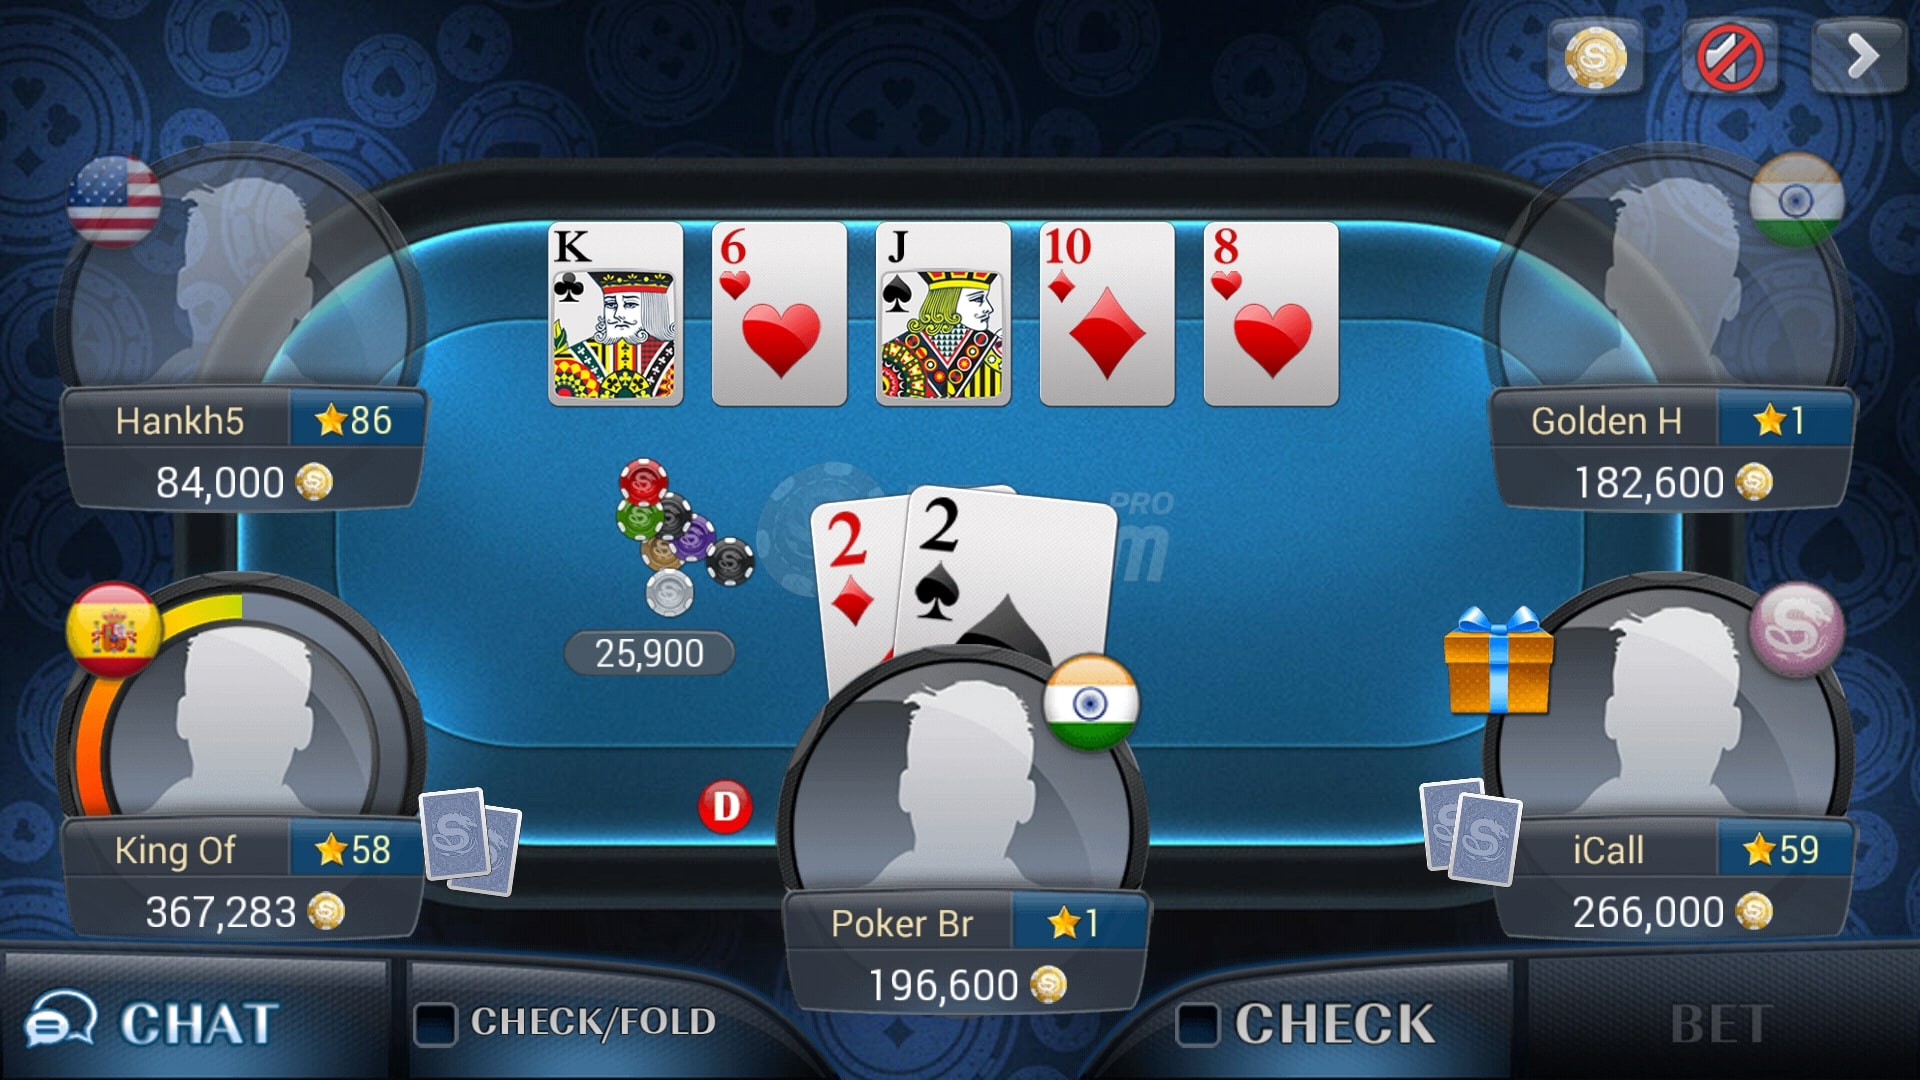 poker star net online gratis